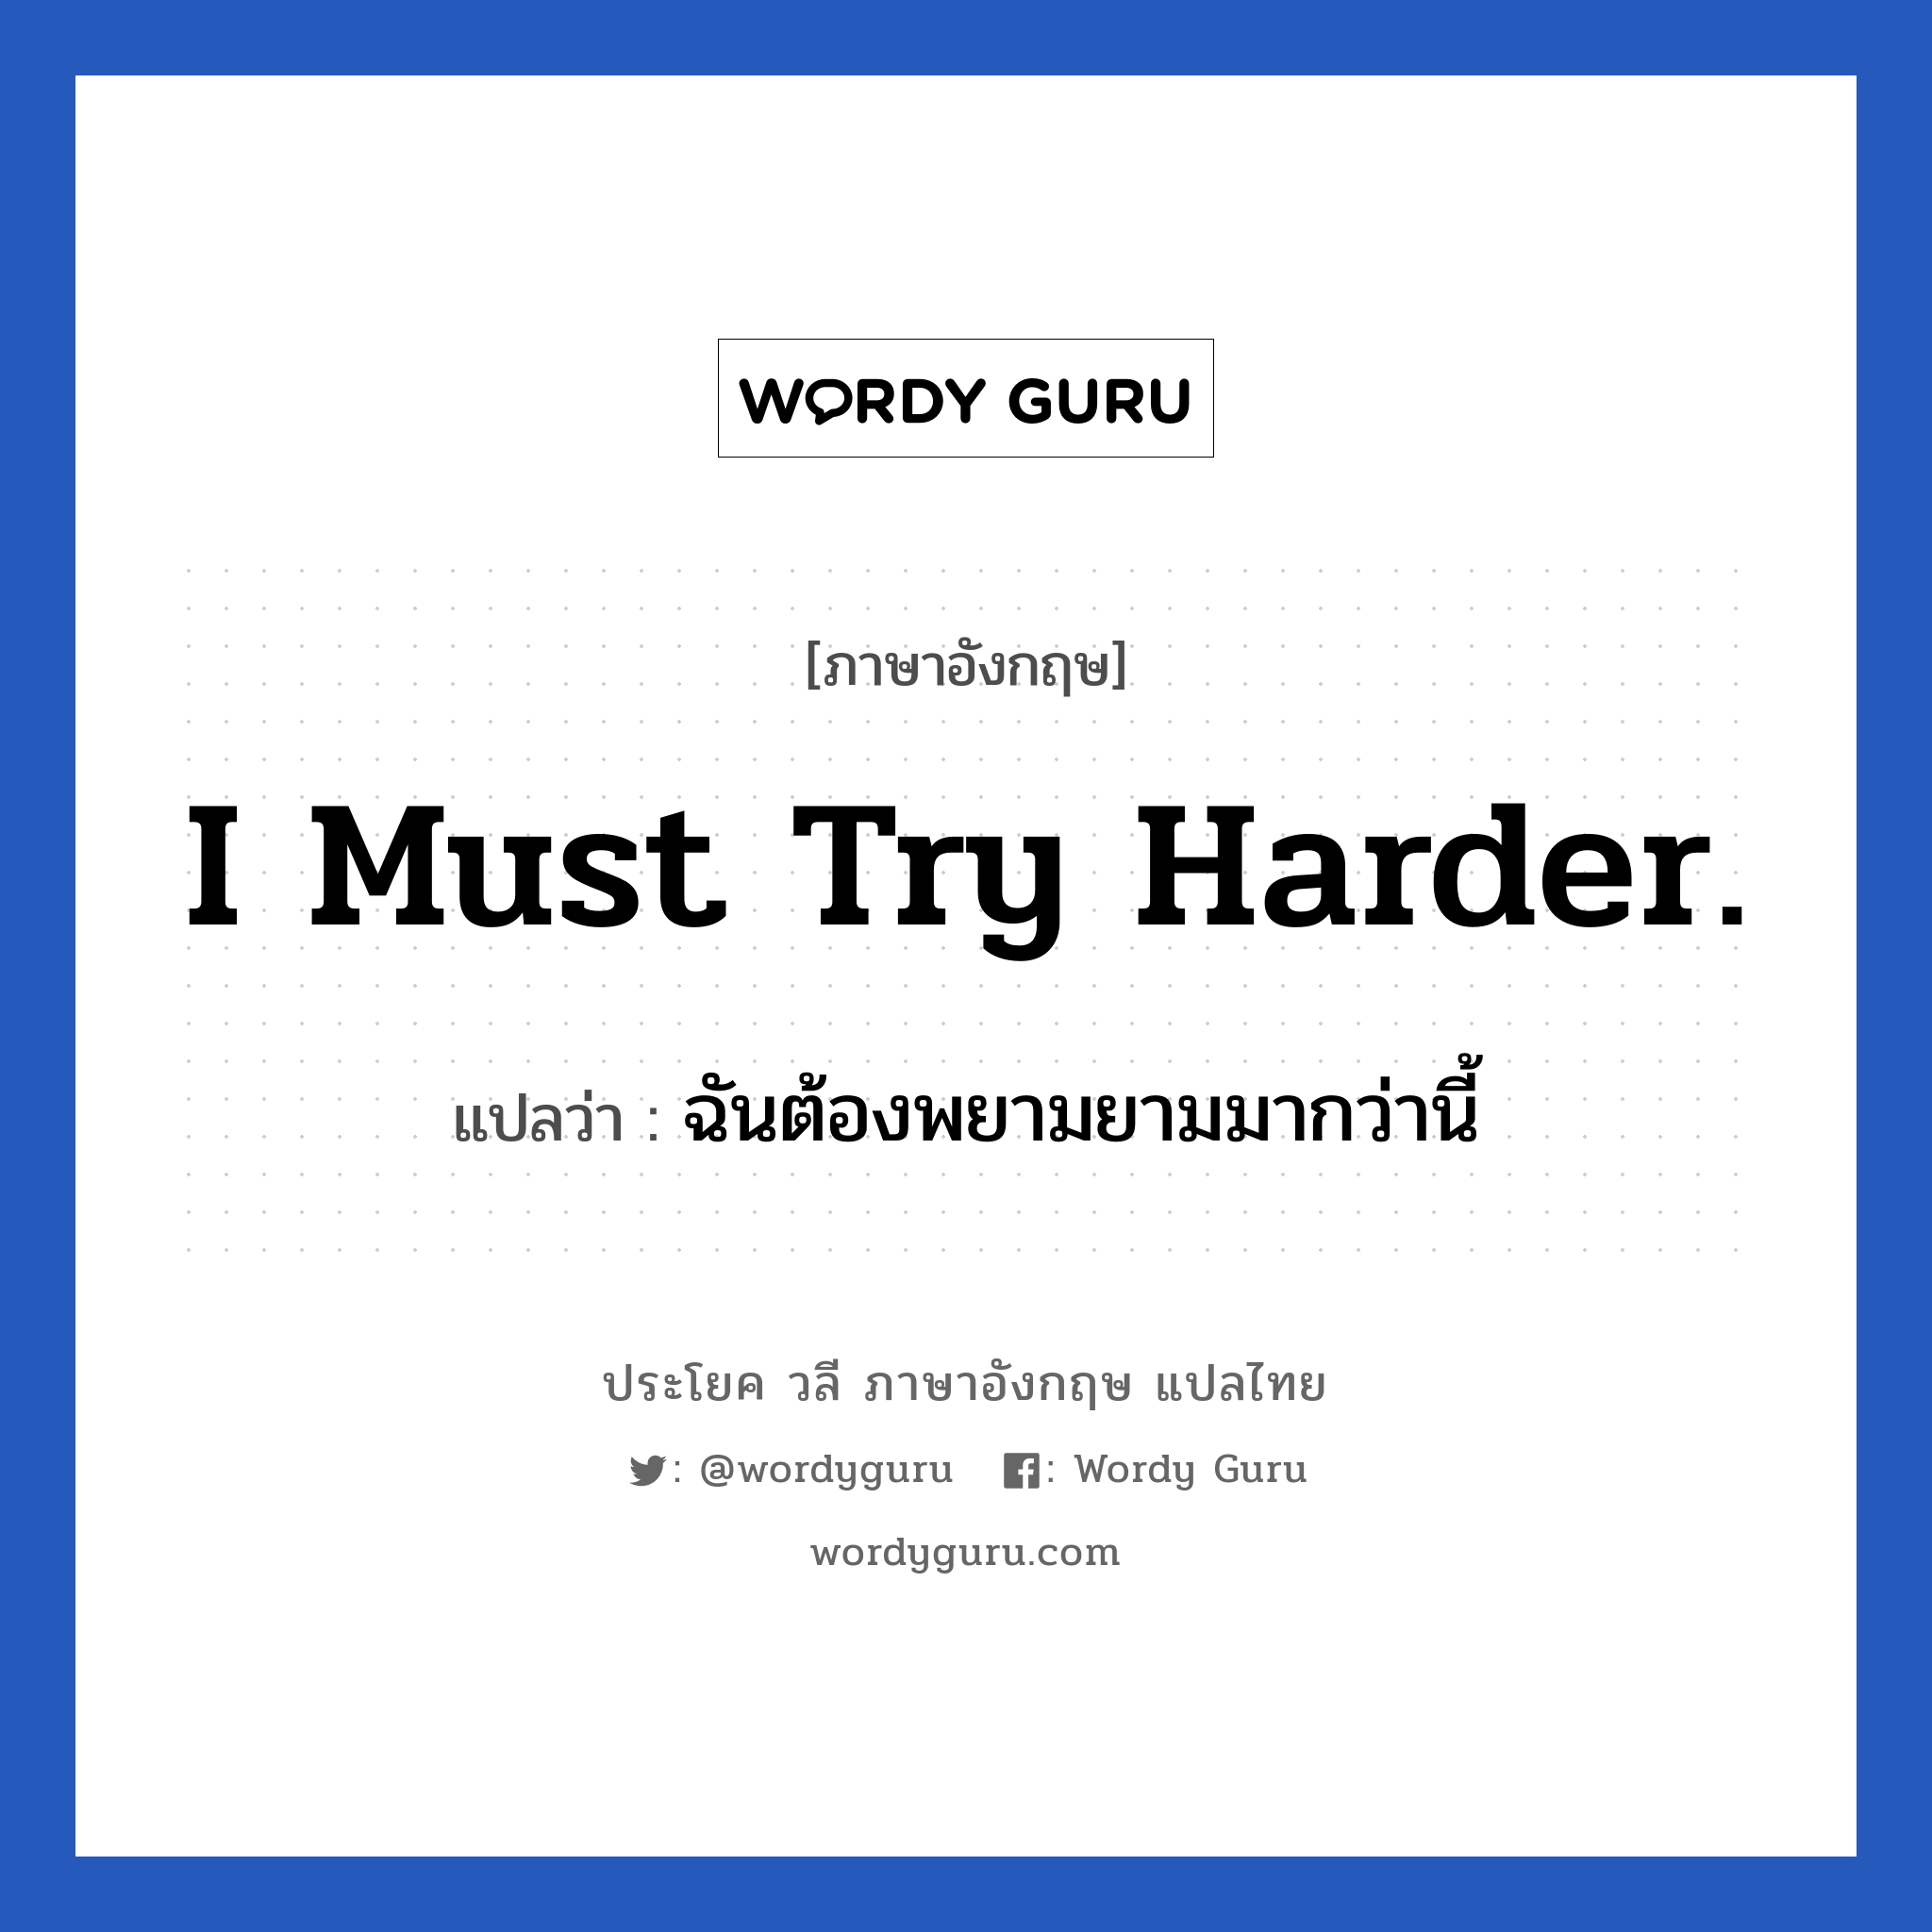 I must try harder. แปลว่า?, วลีภาษาอังกฤษ I must try harder. แปลว่า ฉันต้องพยามยามมากว่านี้